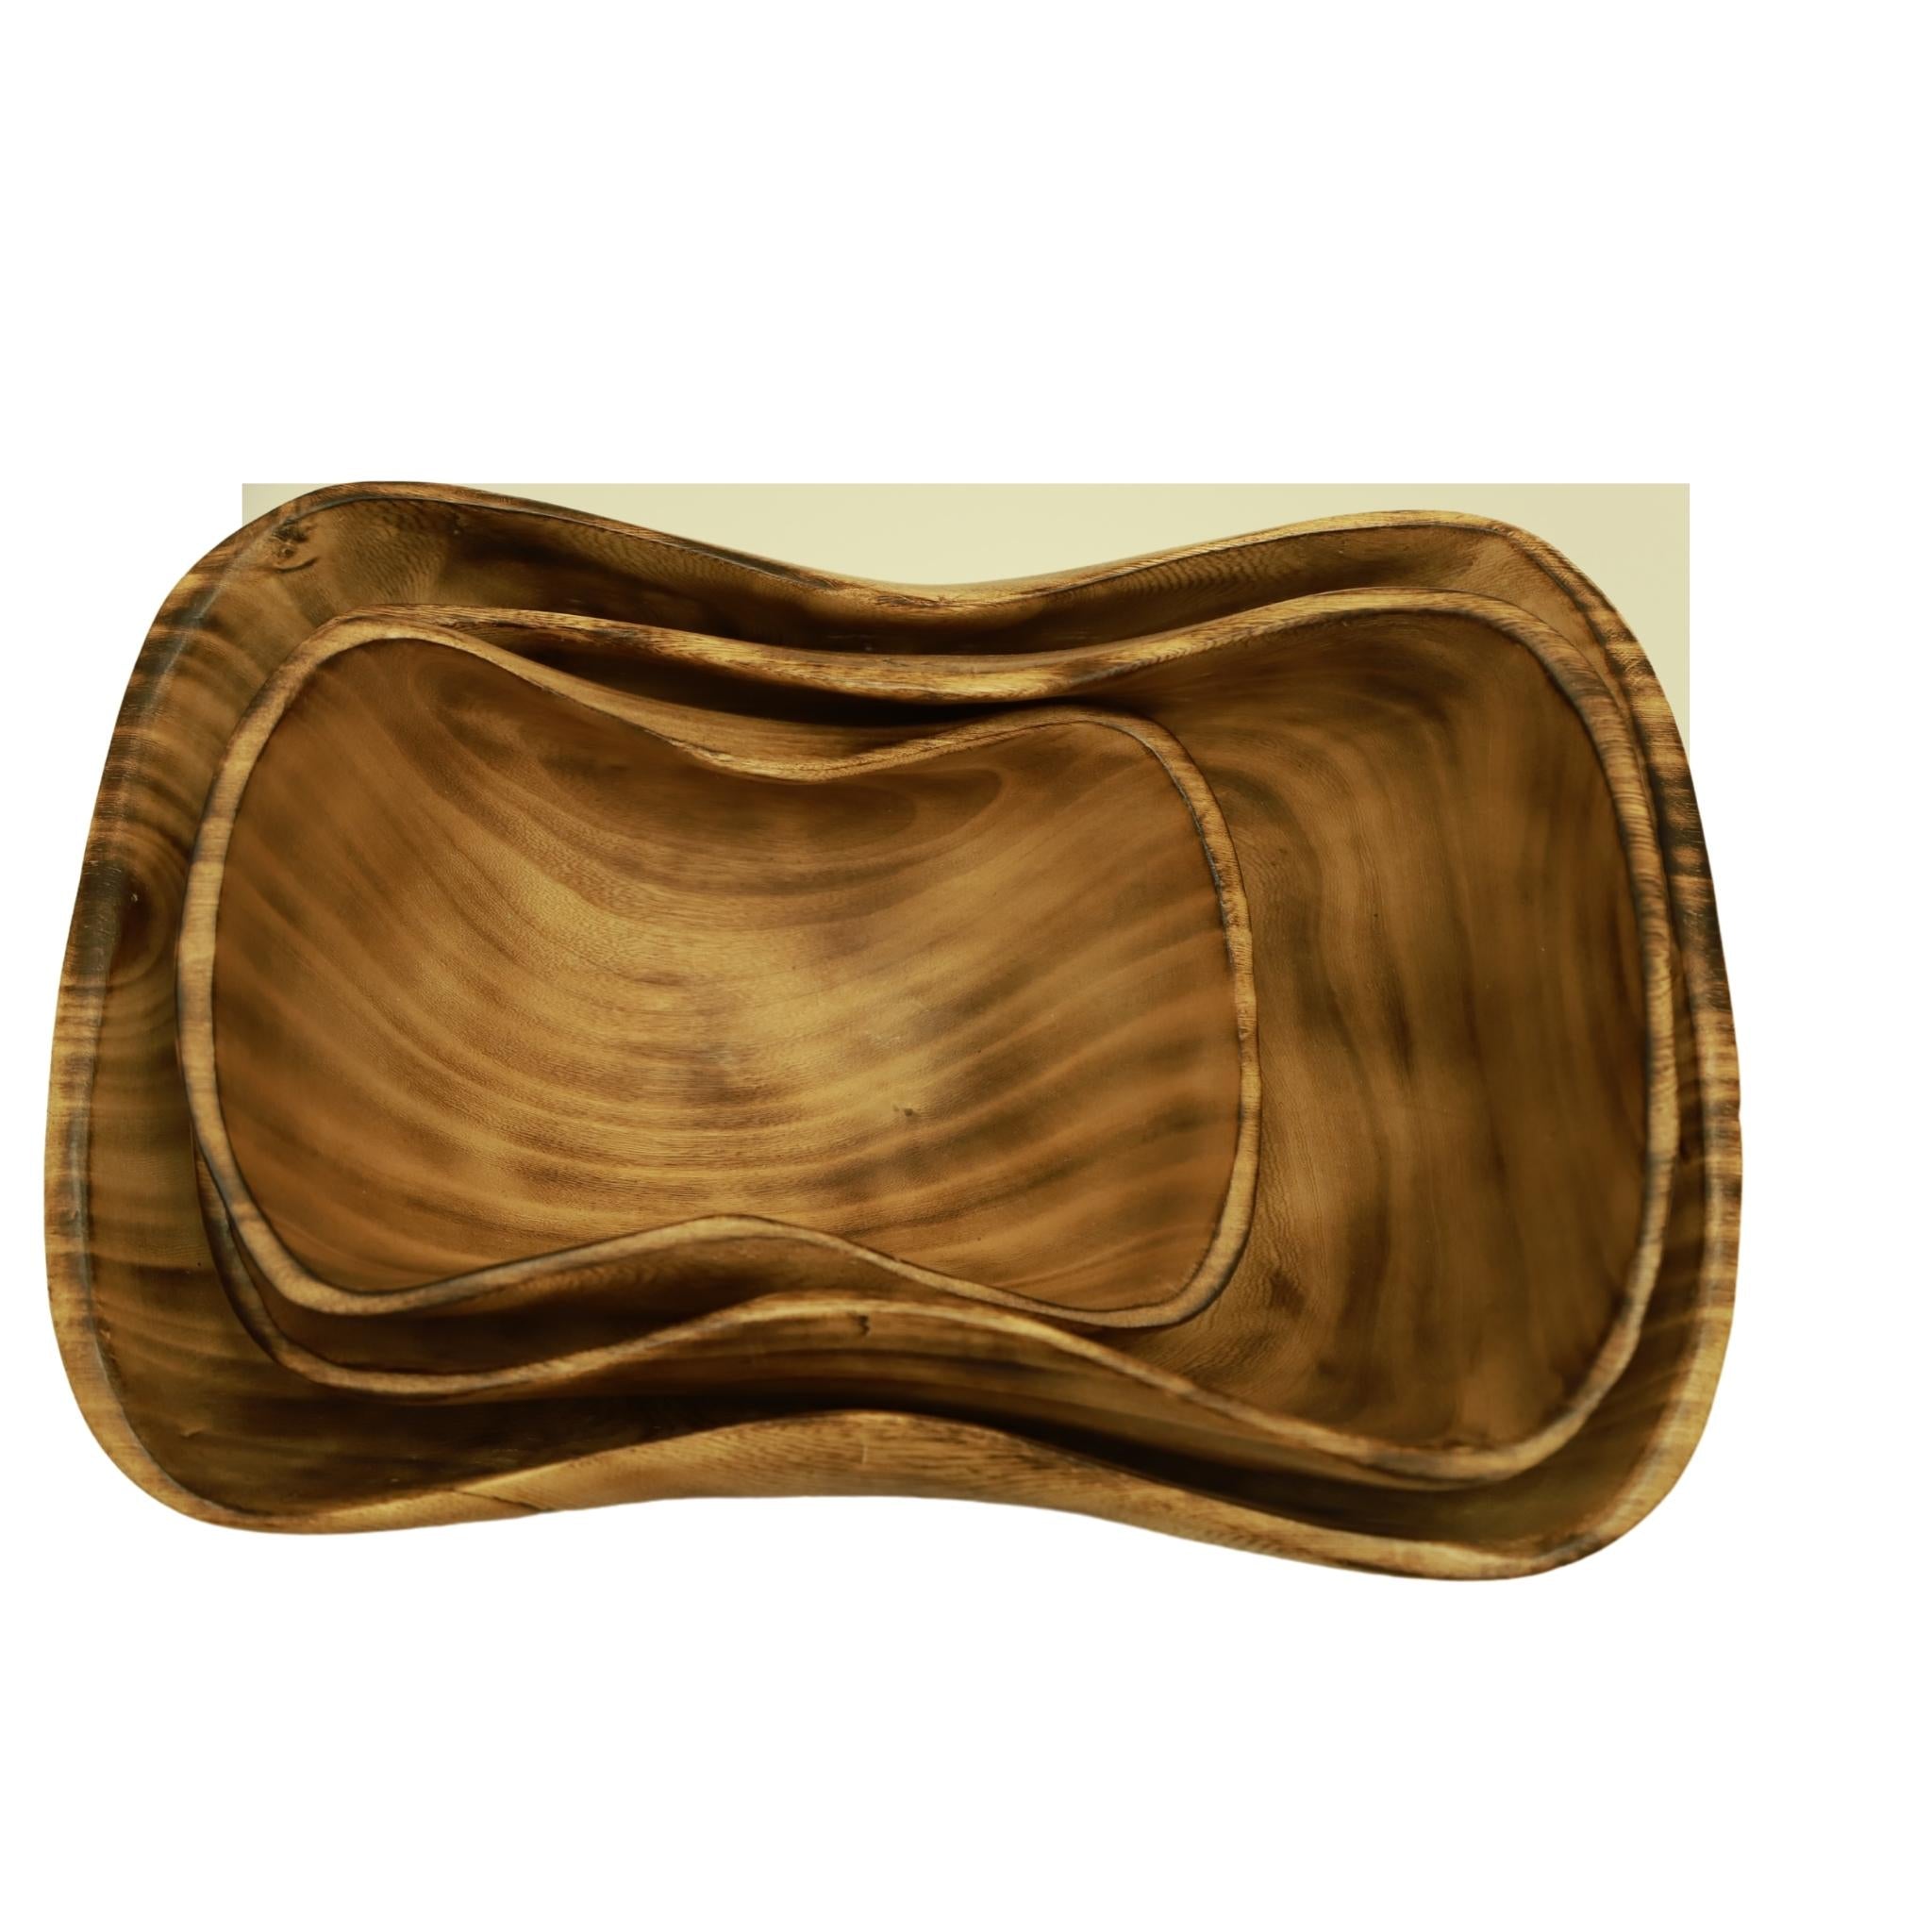 Wooden Bowls | Jacaranda, Wood Nested Bowls |Wood Salad Servers Set | handcrafted bowls | wooden serving Bowls | 3 set Bowls - Tobmarc Home Decor & Gifts 